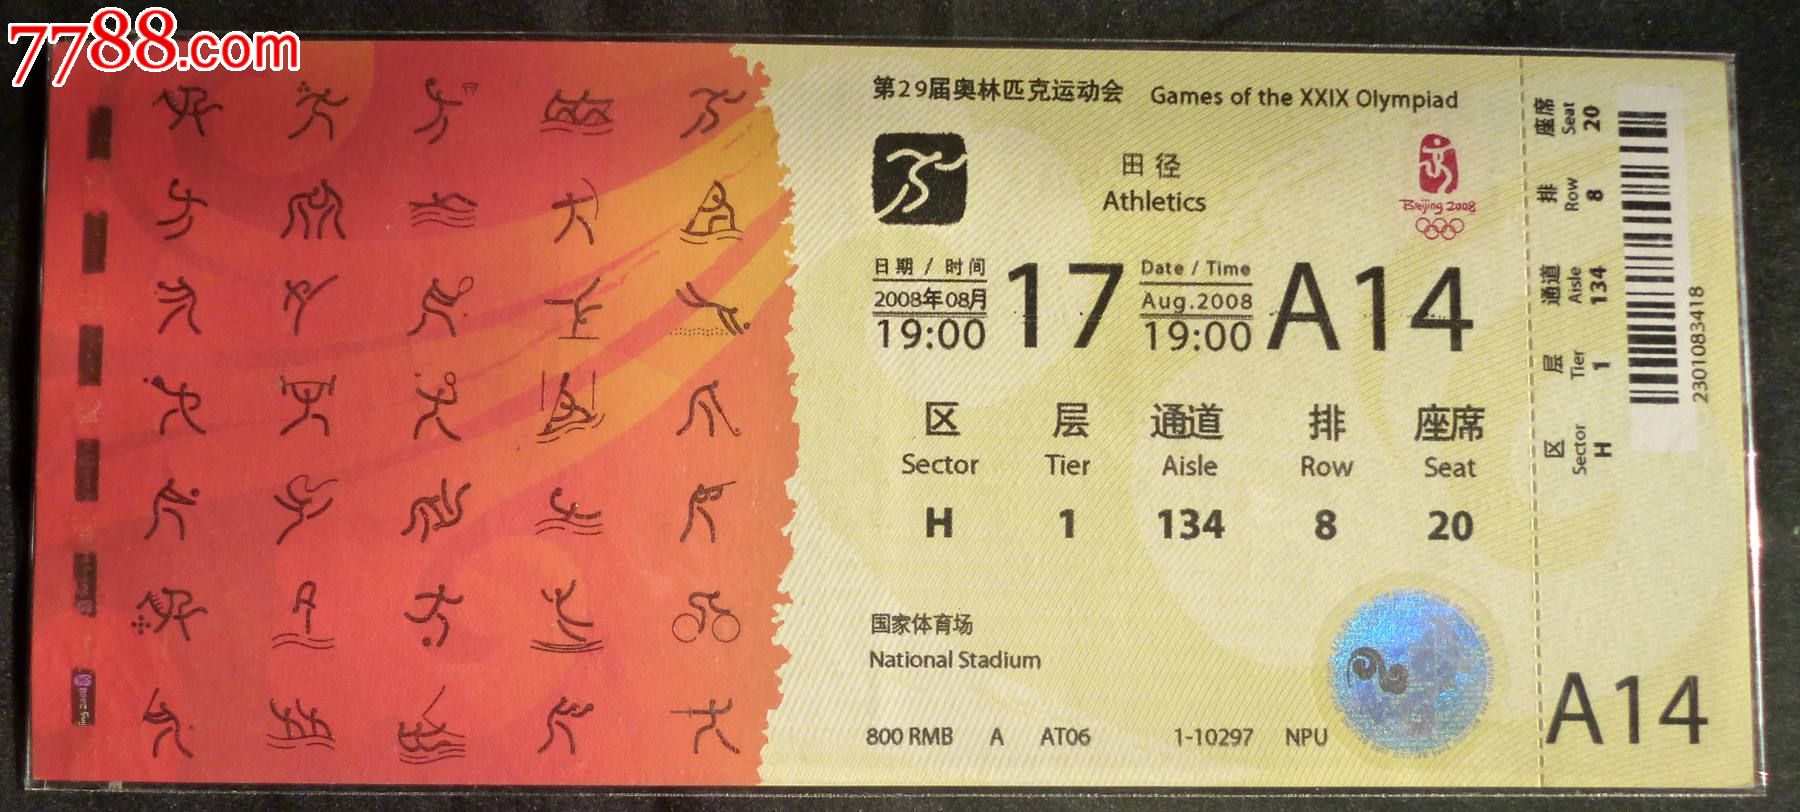 北京奥运会田径比赛门票-价格:22元-se217763